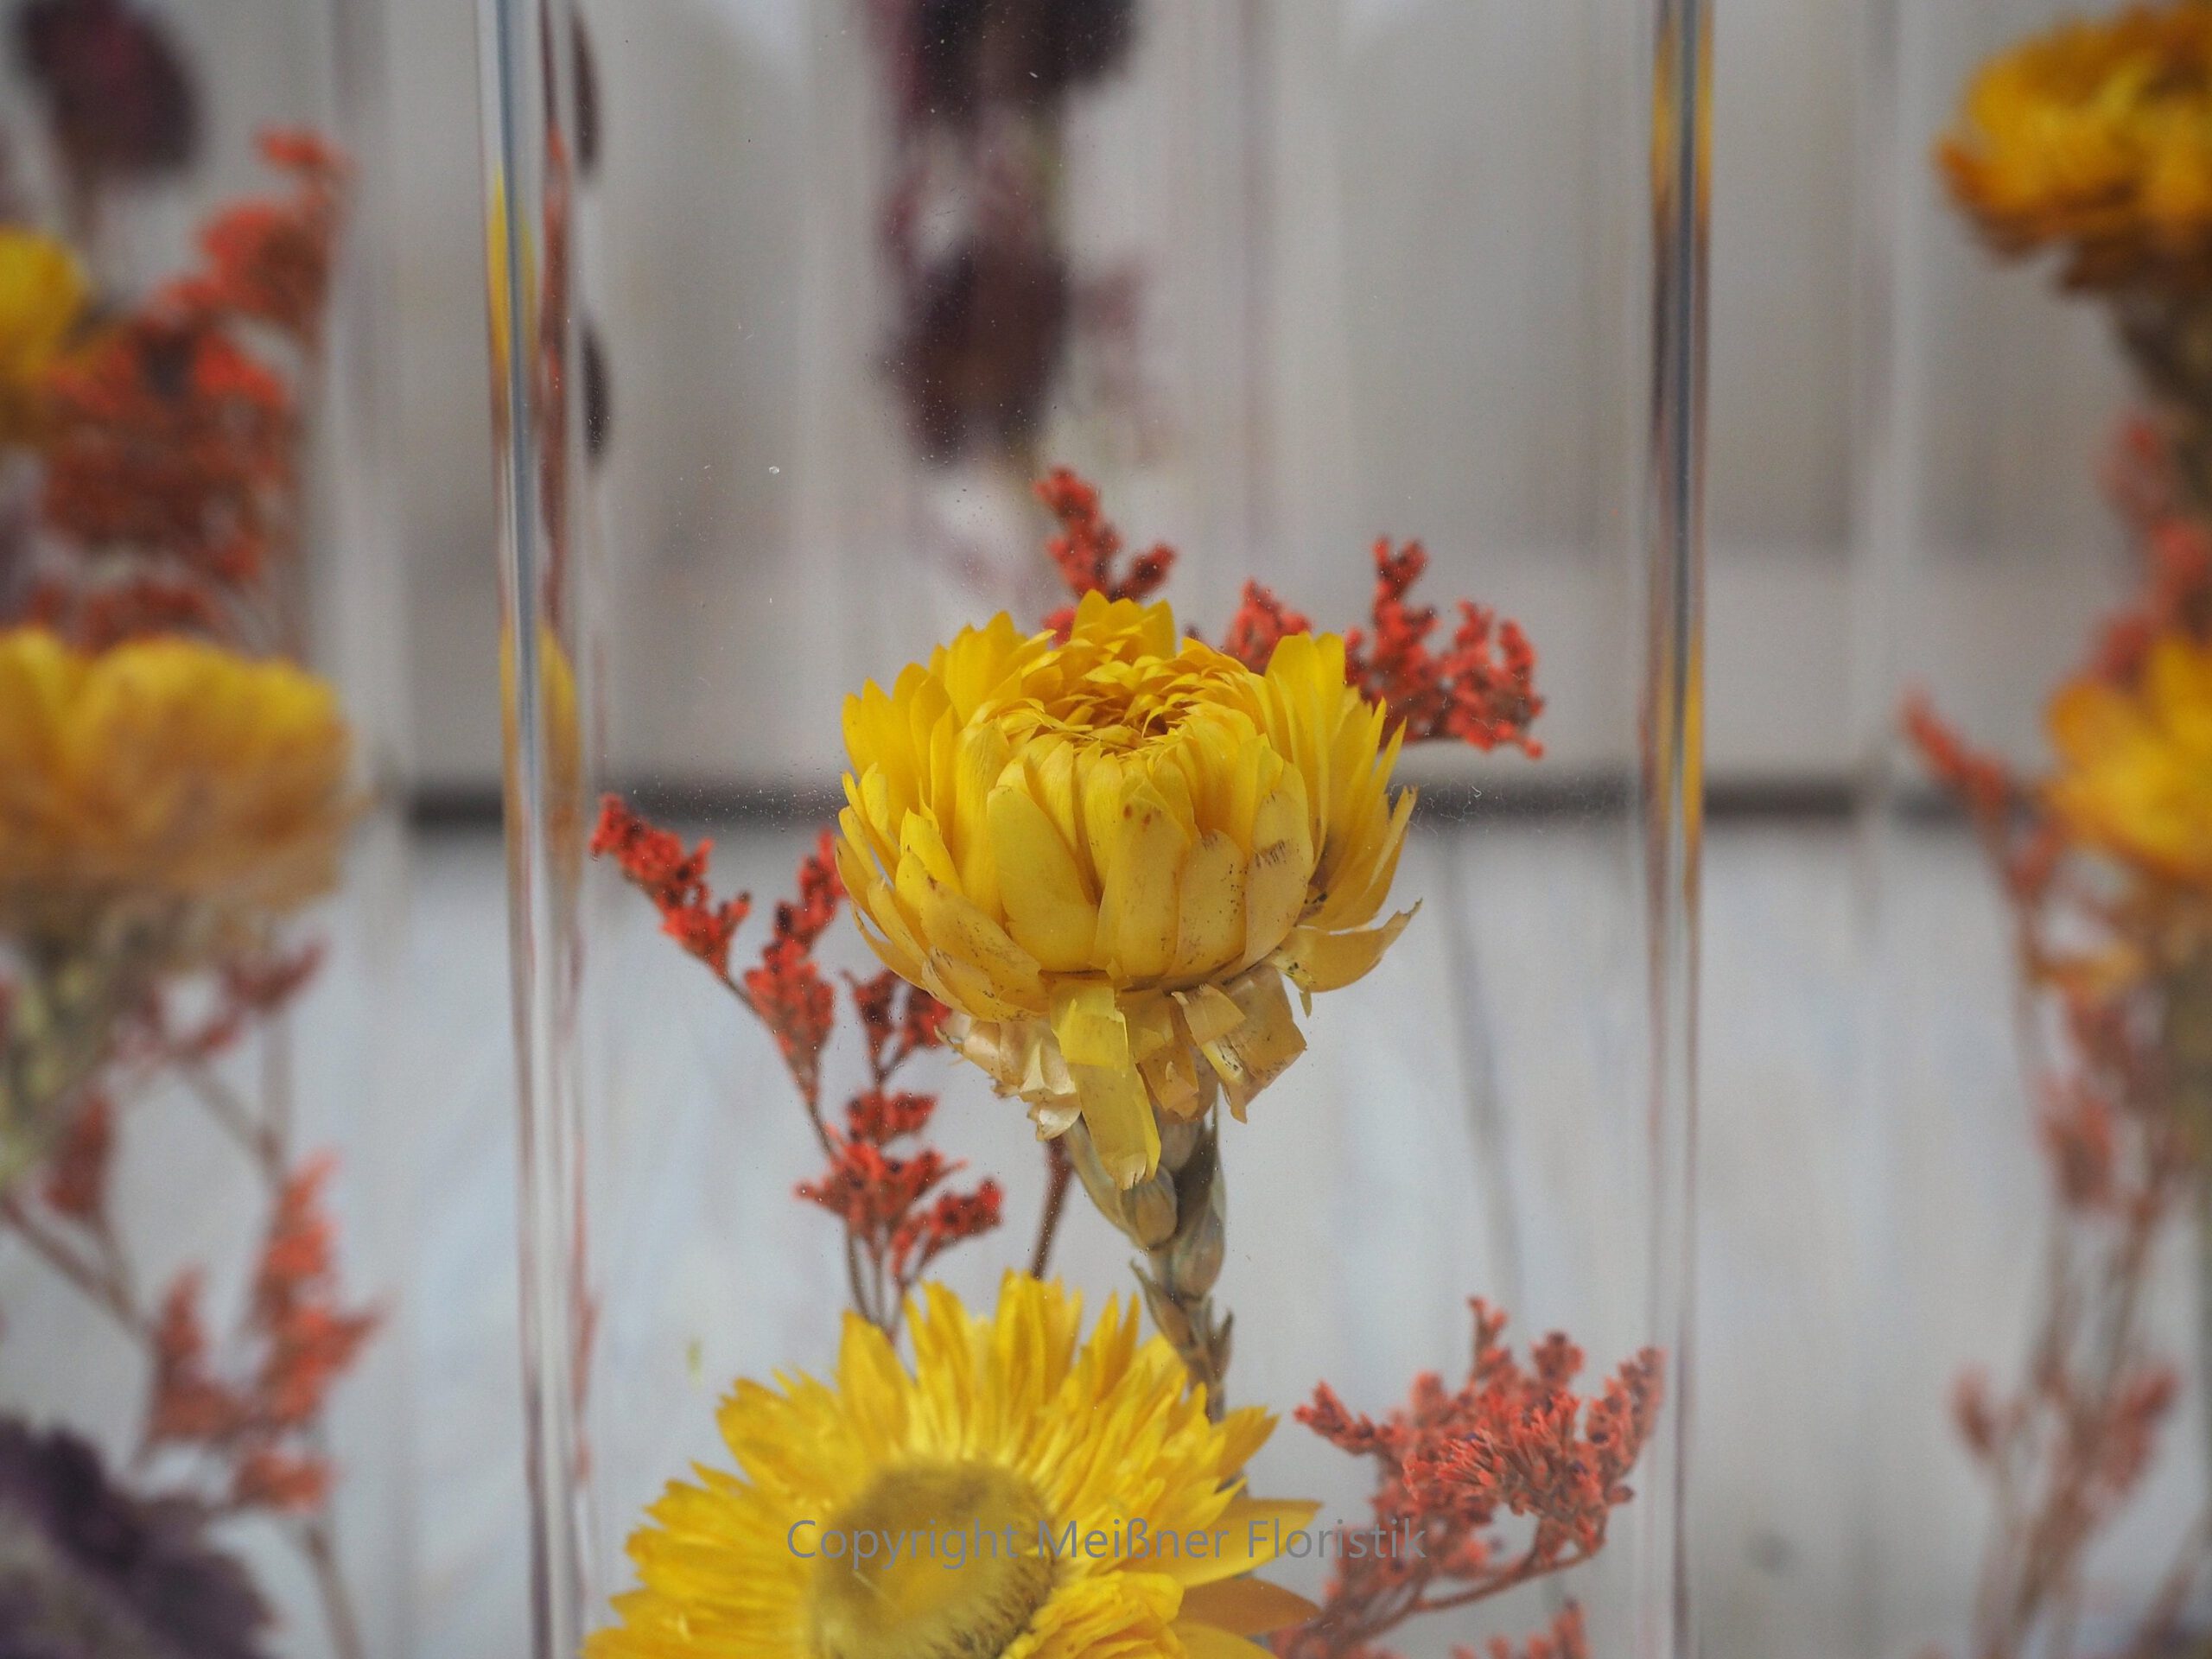 Trockenblumen gefüllte Gläser 3 er Set gelb rot orange